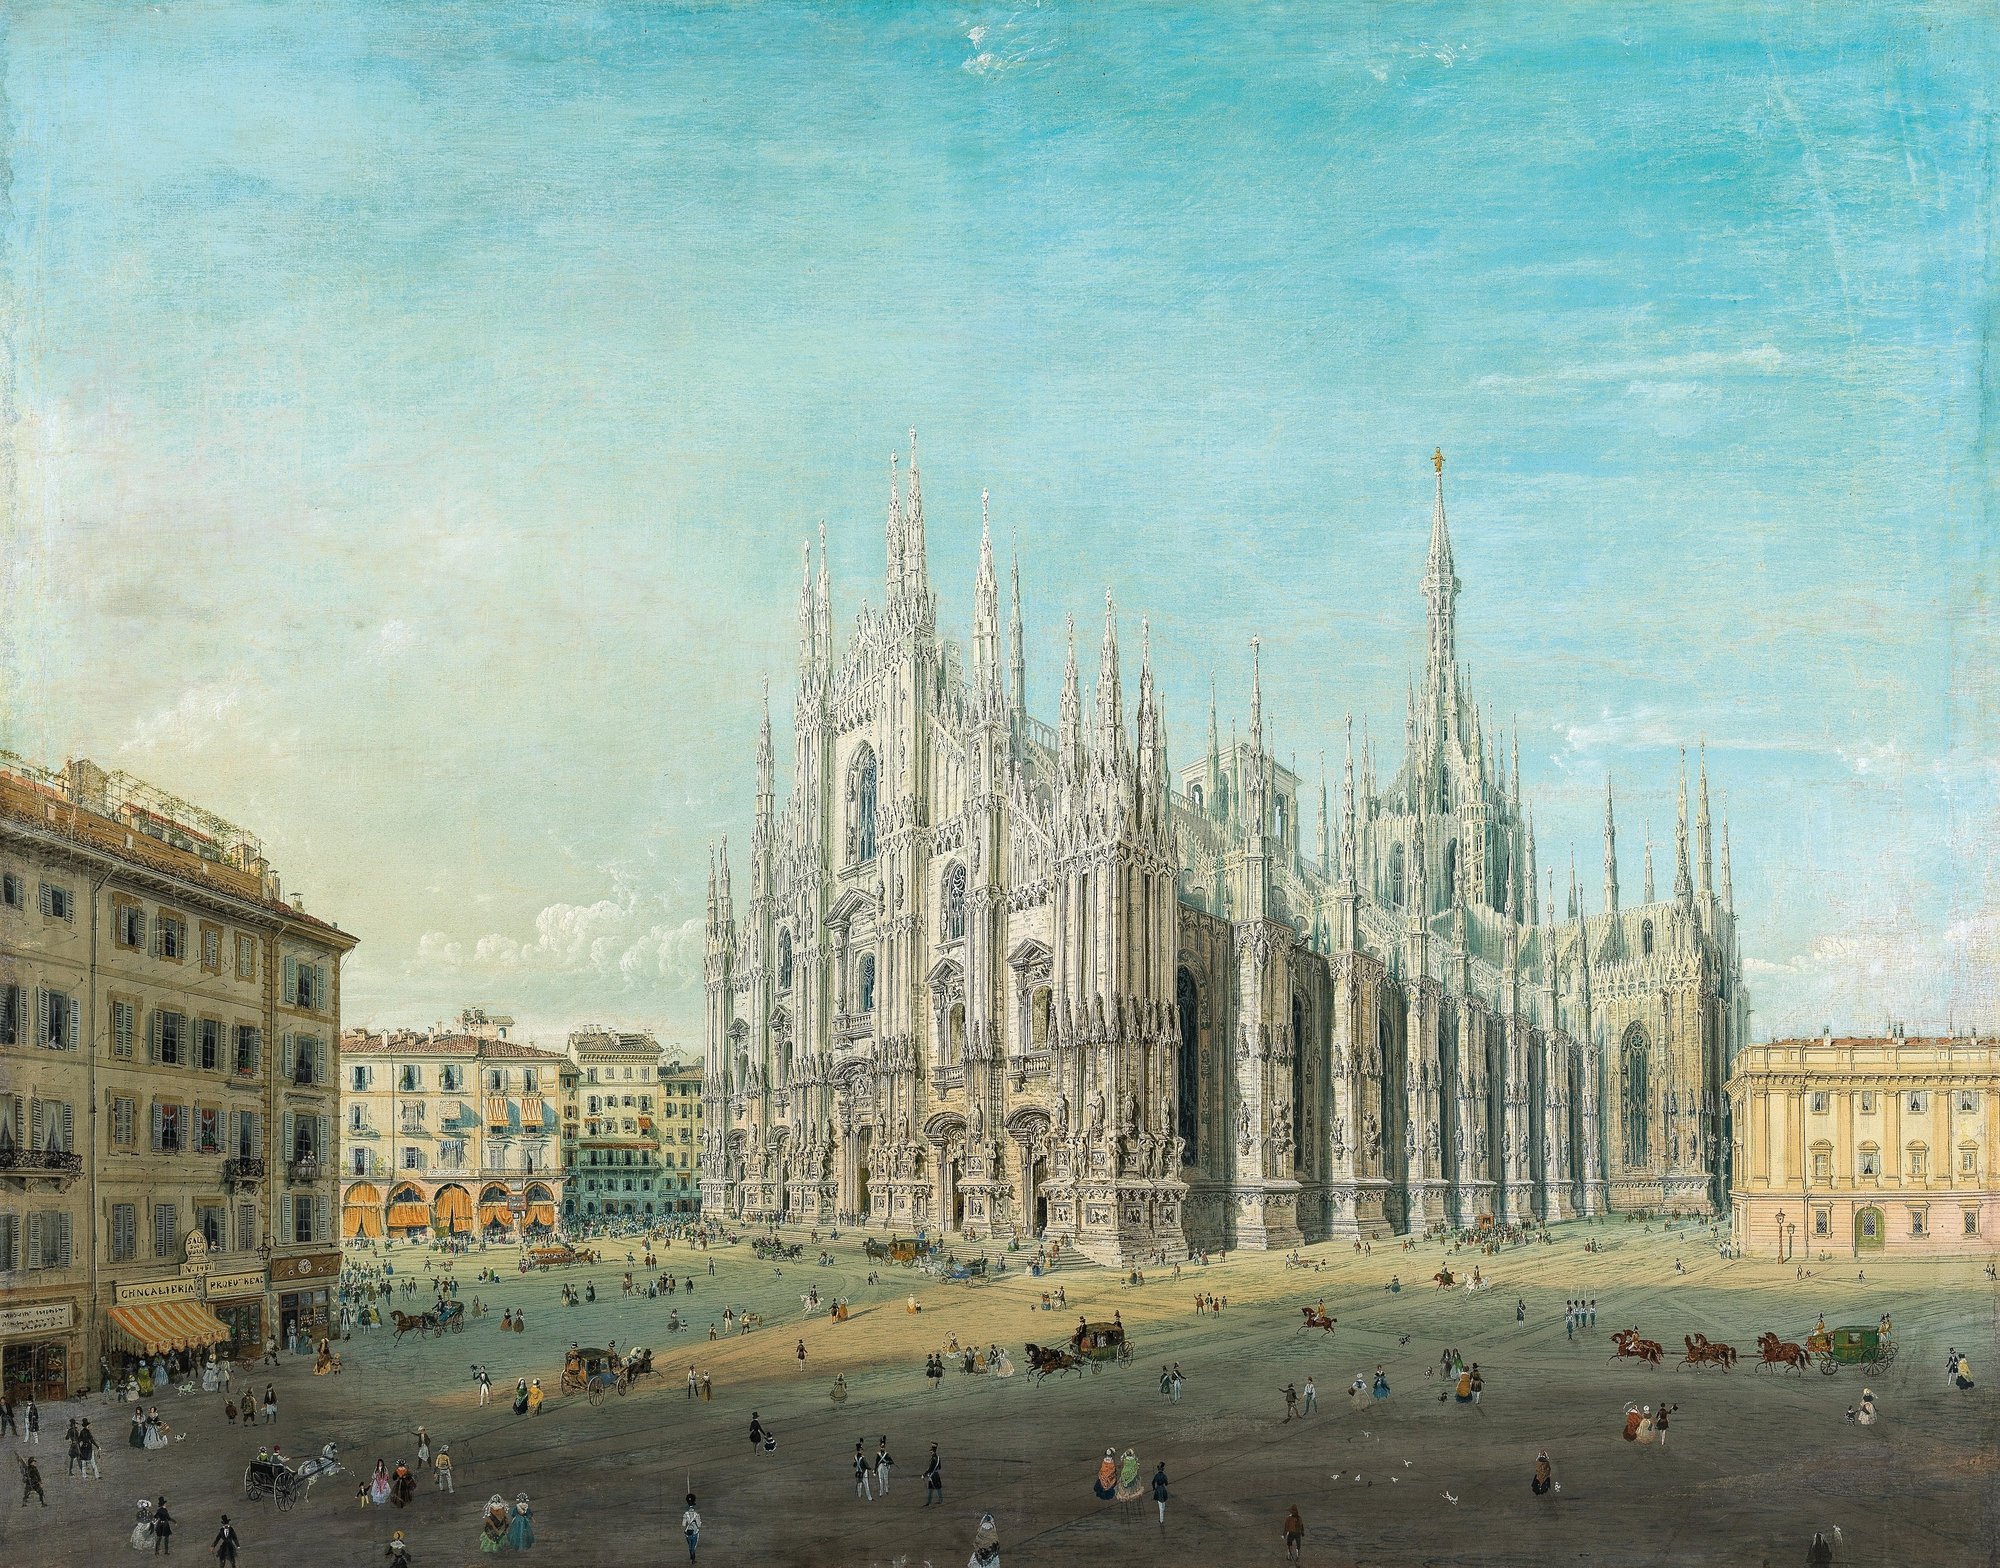 Piazza del Duomo, Milan (1830 - 1884)